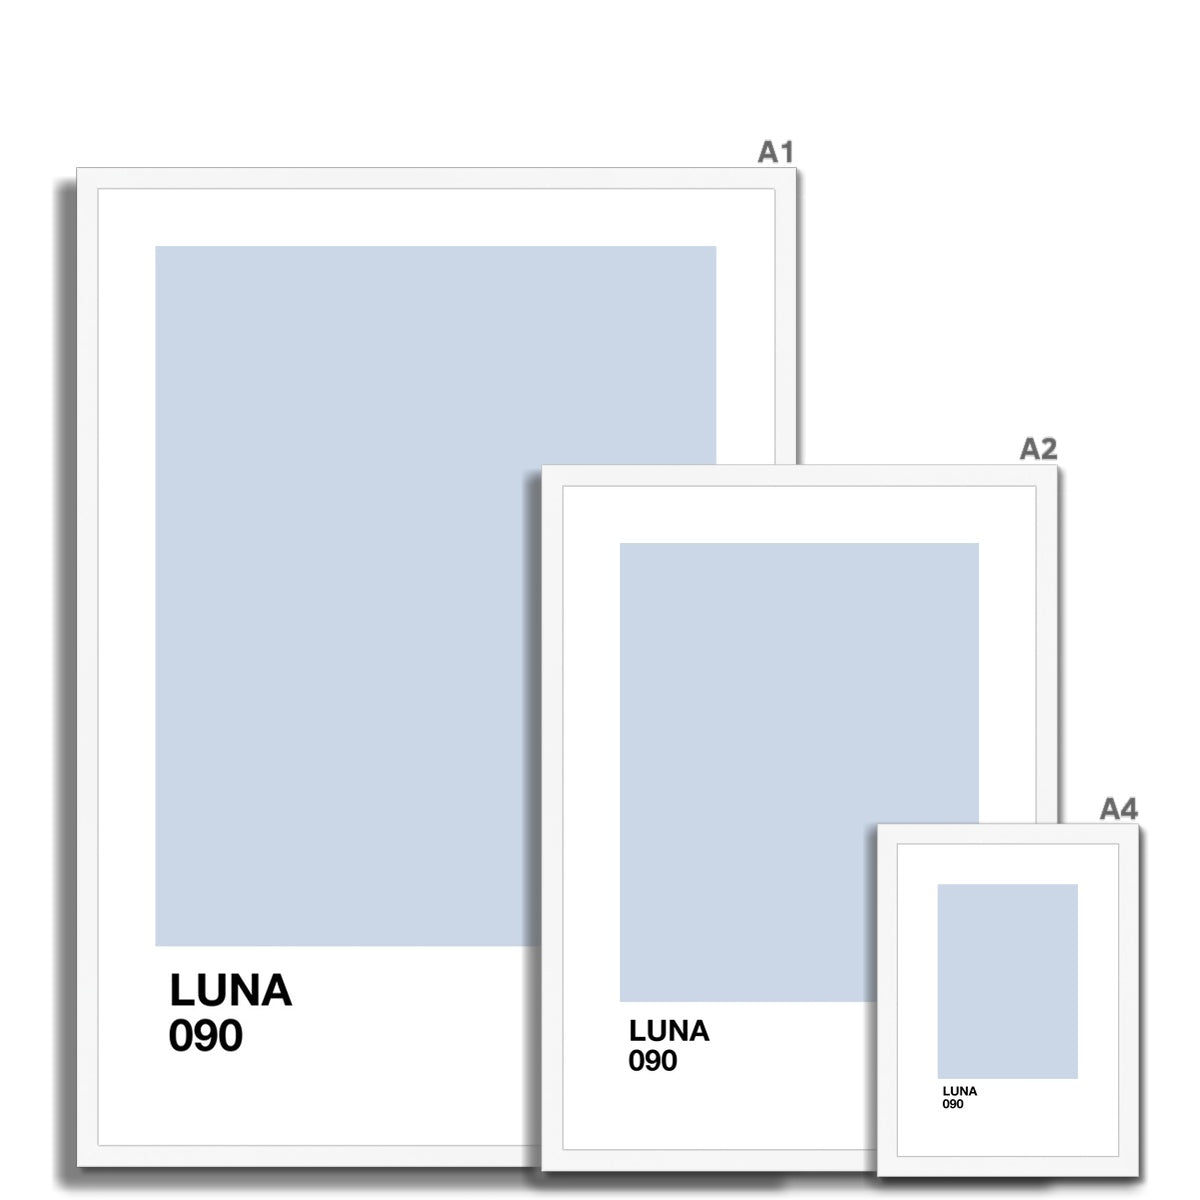 luna Framed & Mounted Print